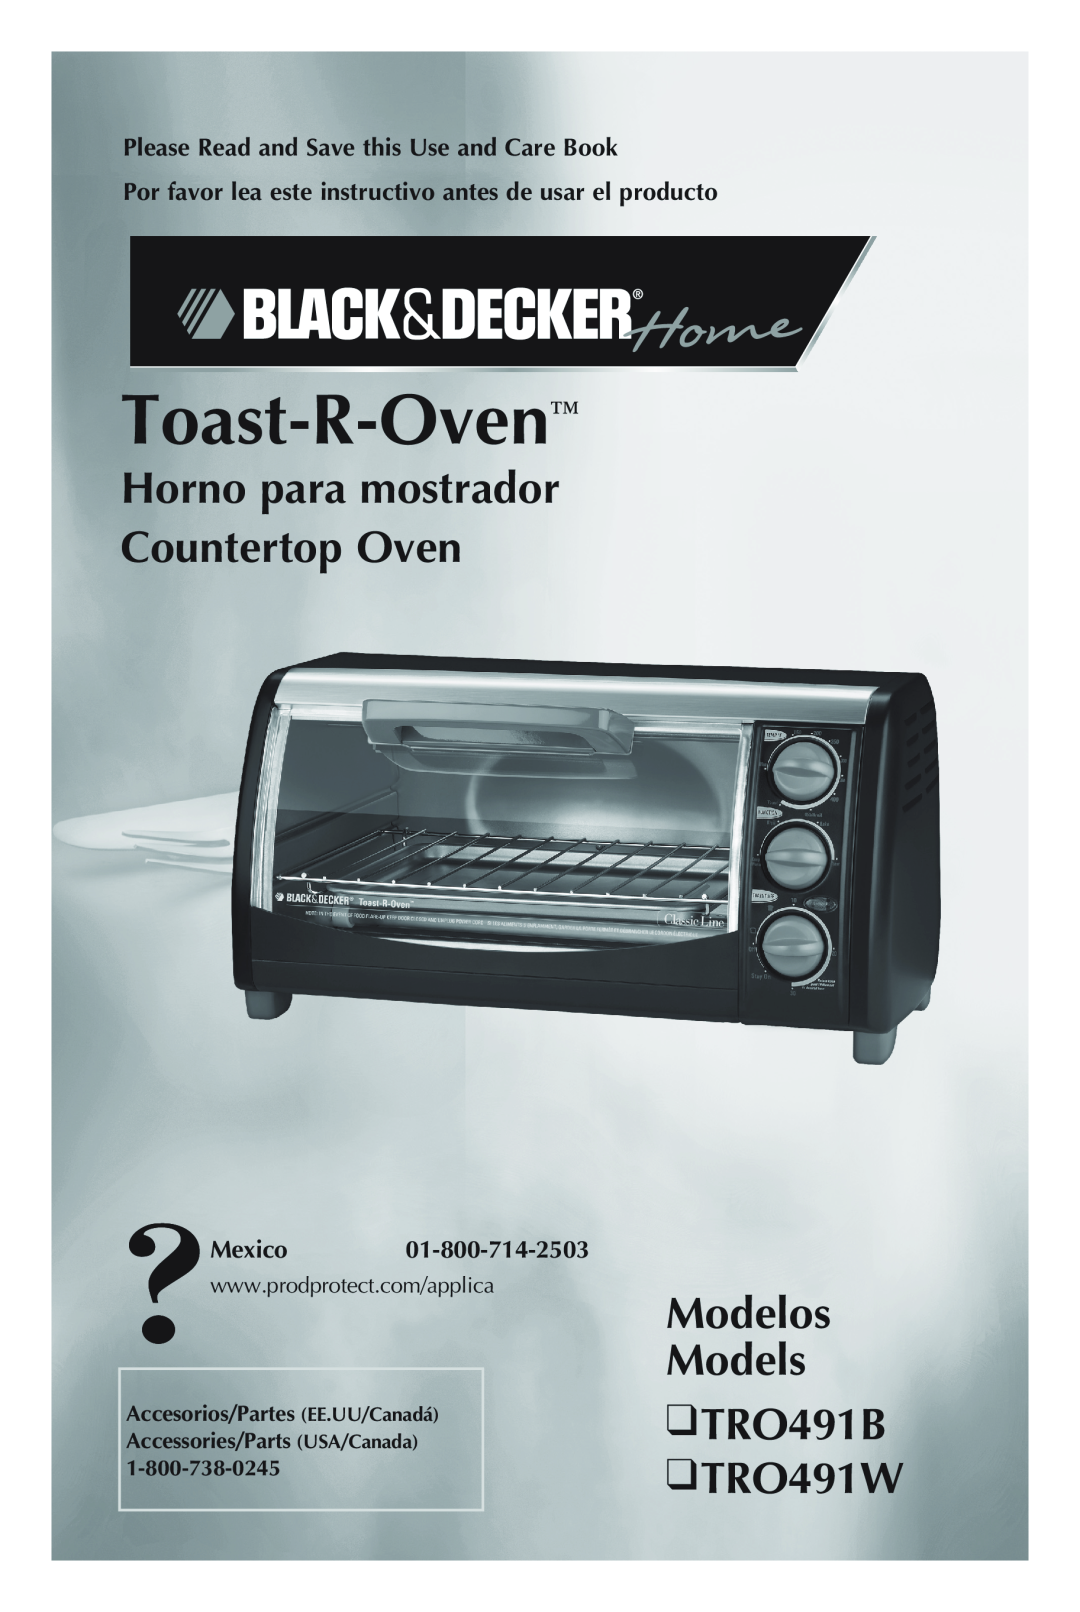 Black & Decker manual Horno para mostrador Countertop Oven, Modelos Models TRO491B TRO491W, Toast-R-Oven, Mexico 